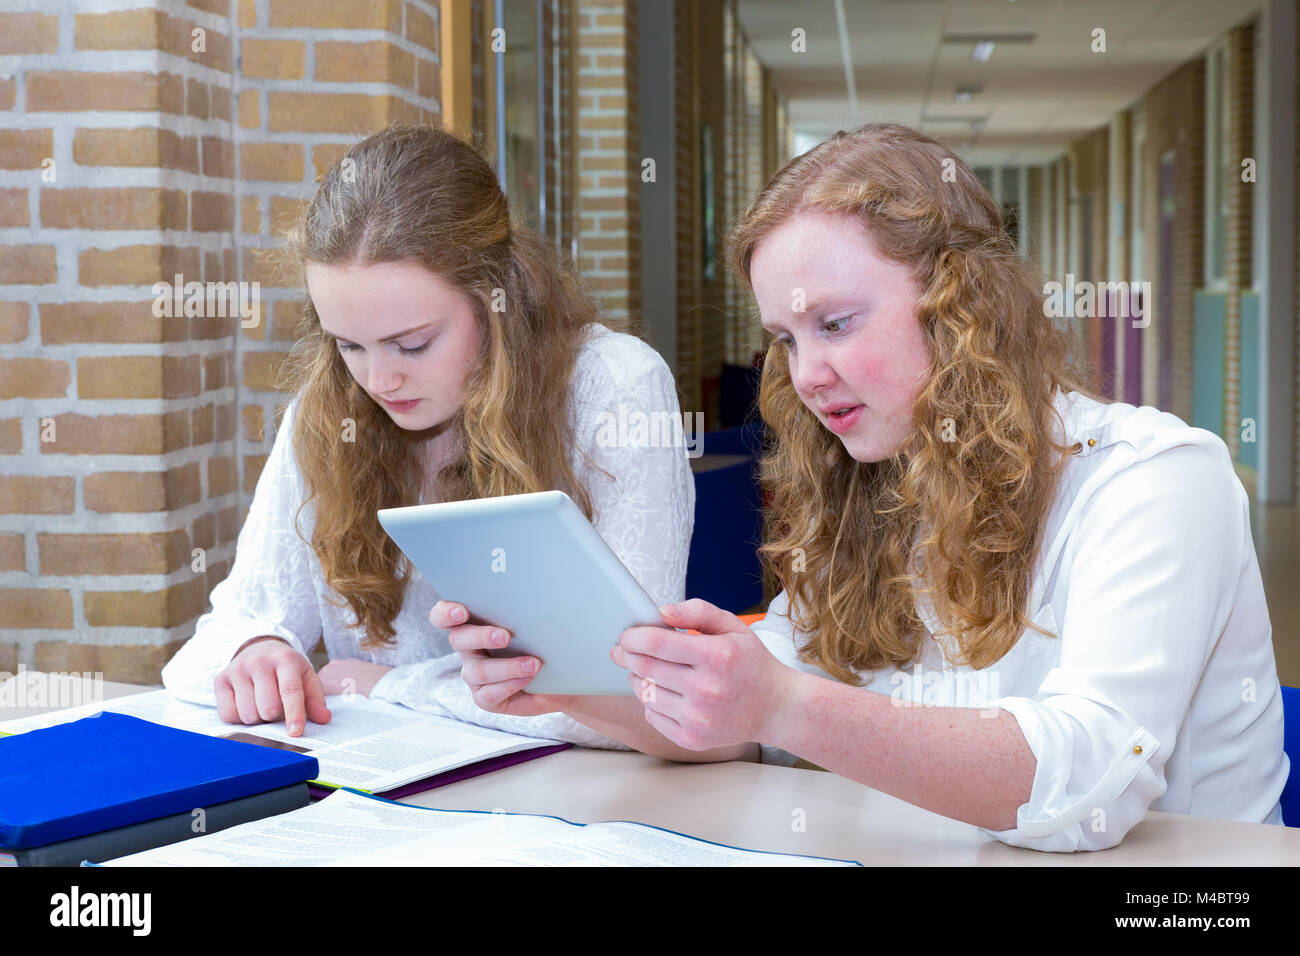 Two teenage girls studying in corridor of school Stock Photo